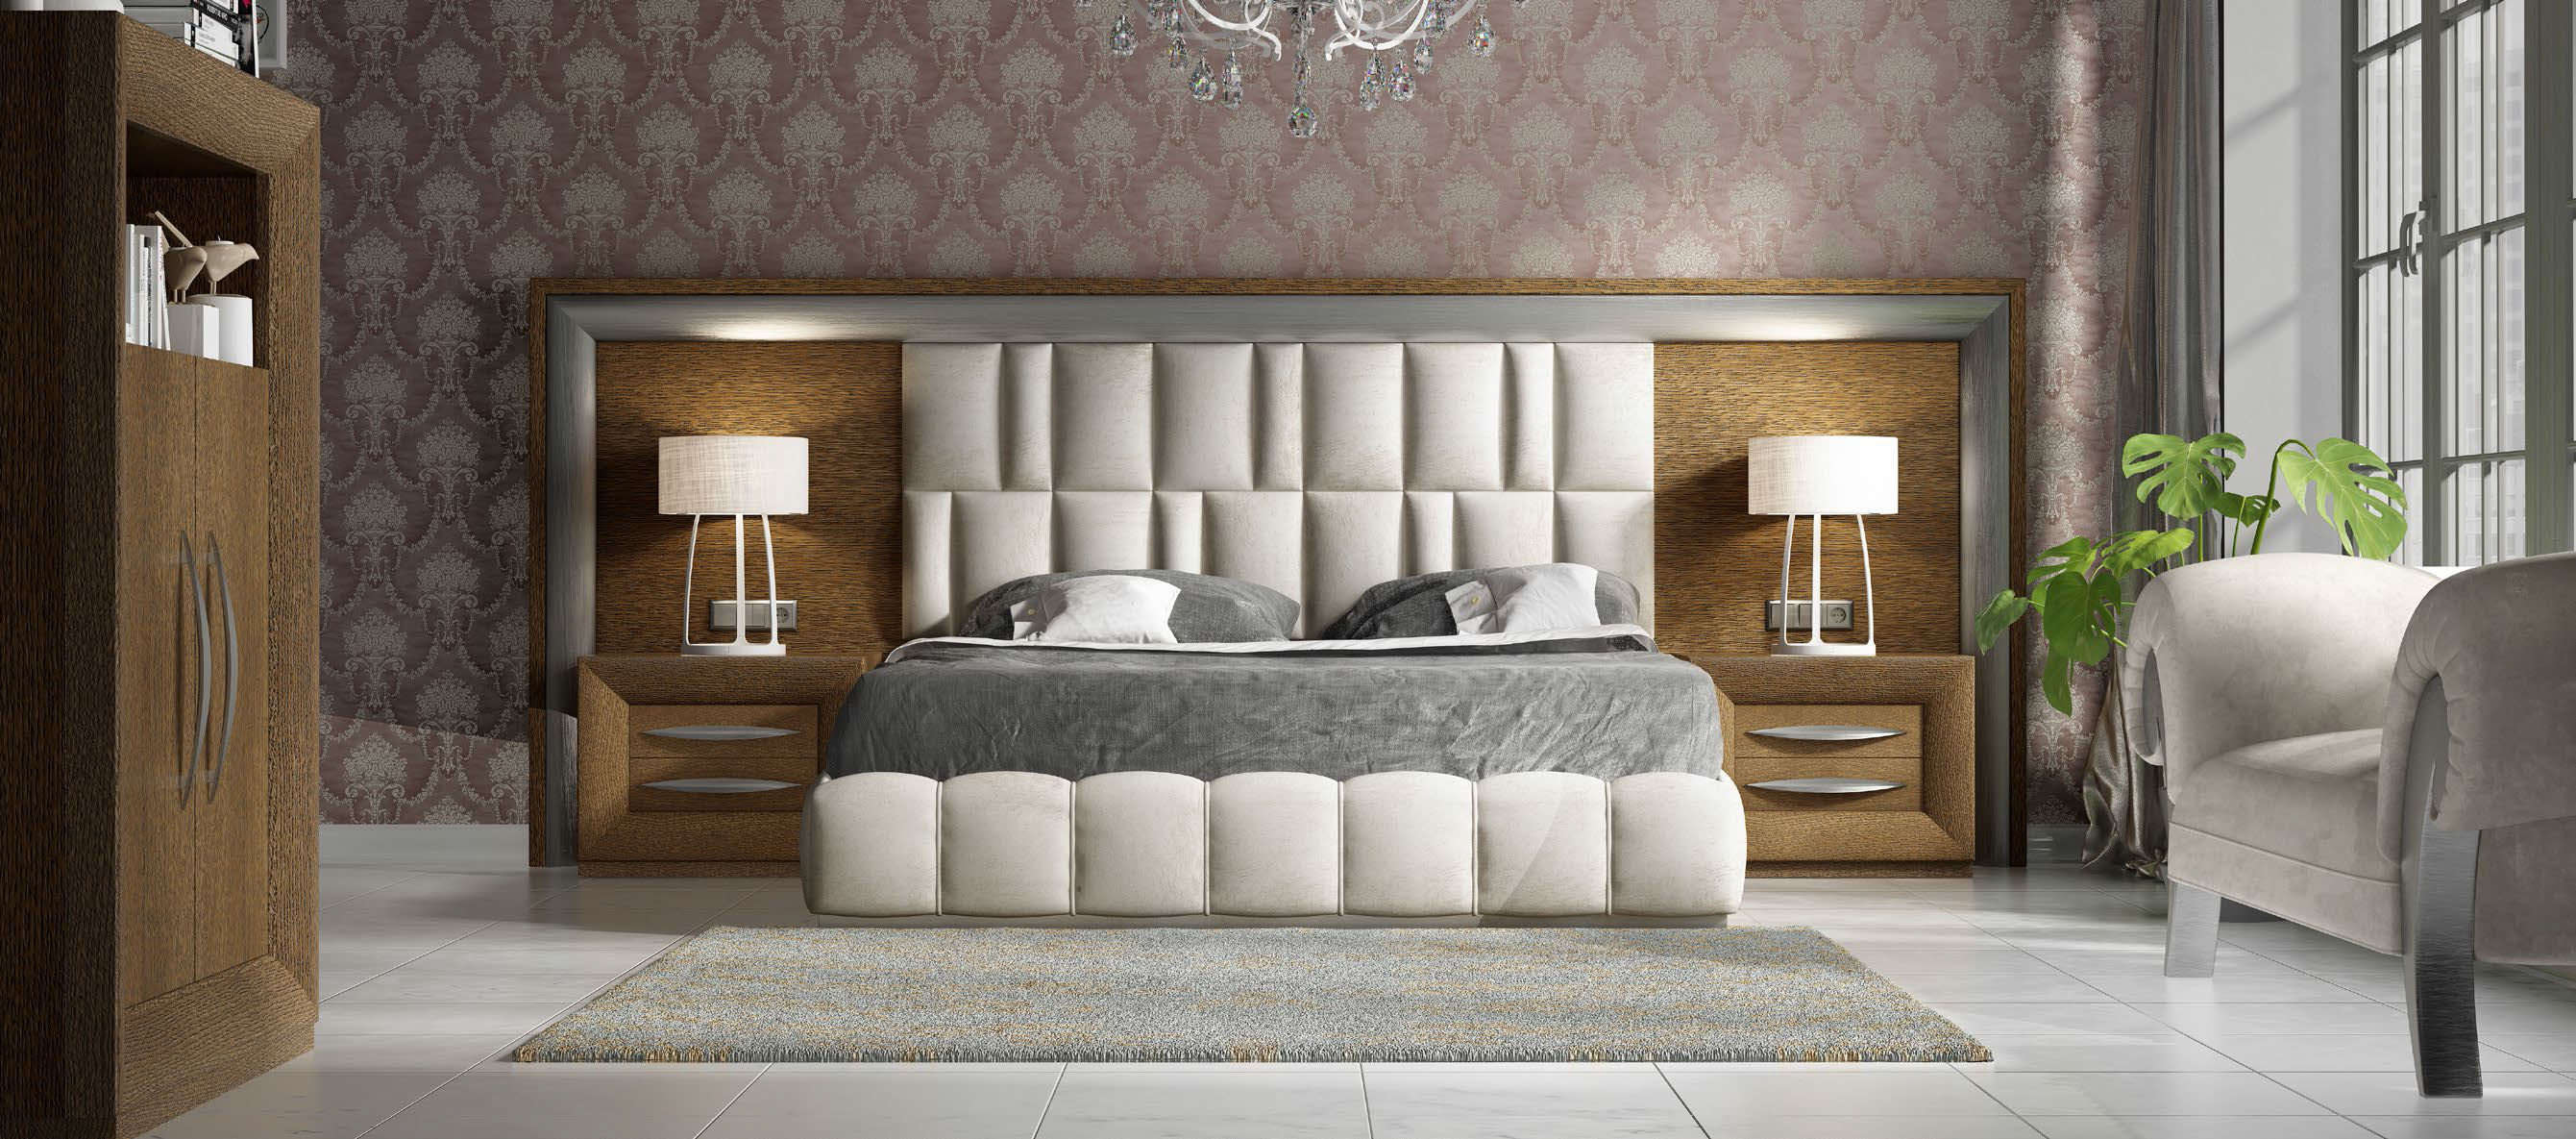 Brands Franco Furniture Avanty Bedrooms, Spain DOR 116